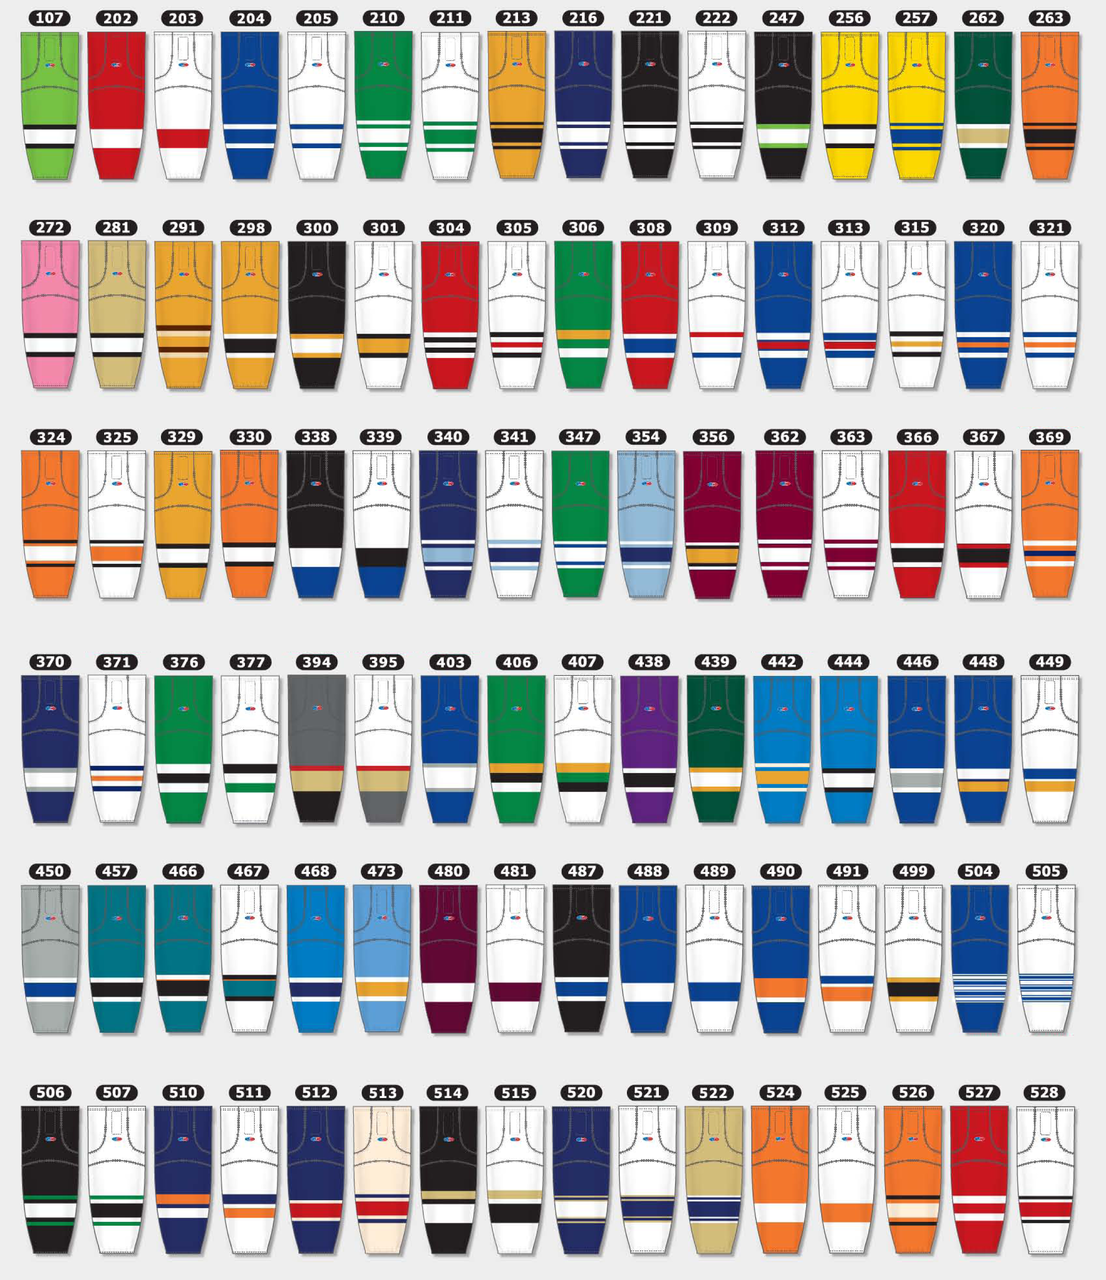 HS2100-501 Seattle Kraken Hockey Socks (Pair)